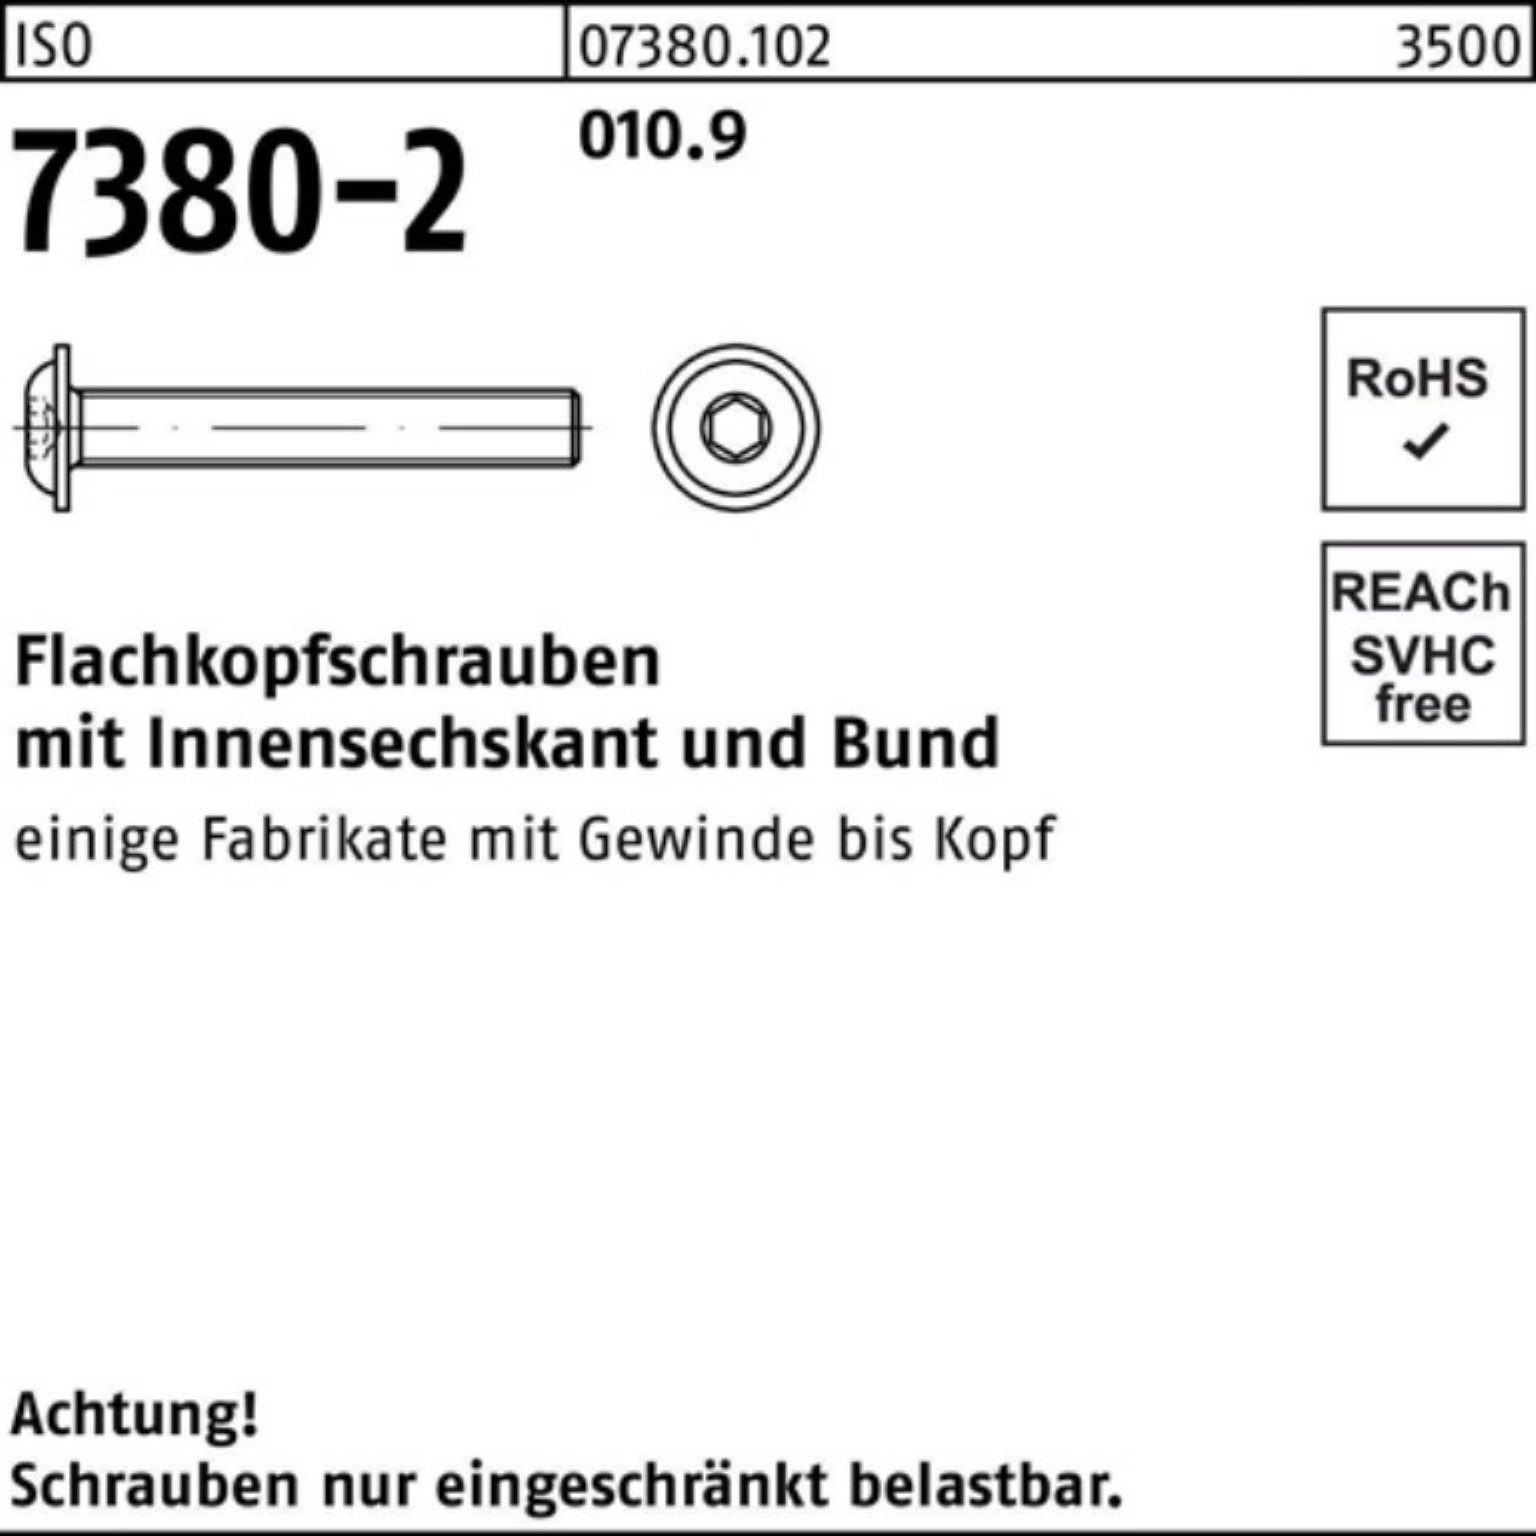 Bund/Innen-6kt Pack 20 200er Reyher Schraube M8x ISO Flachkopfschraube 010.9 7380-2 50